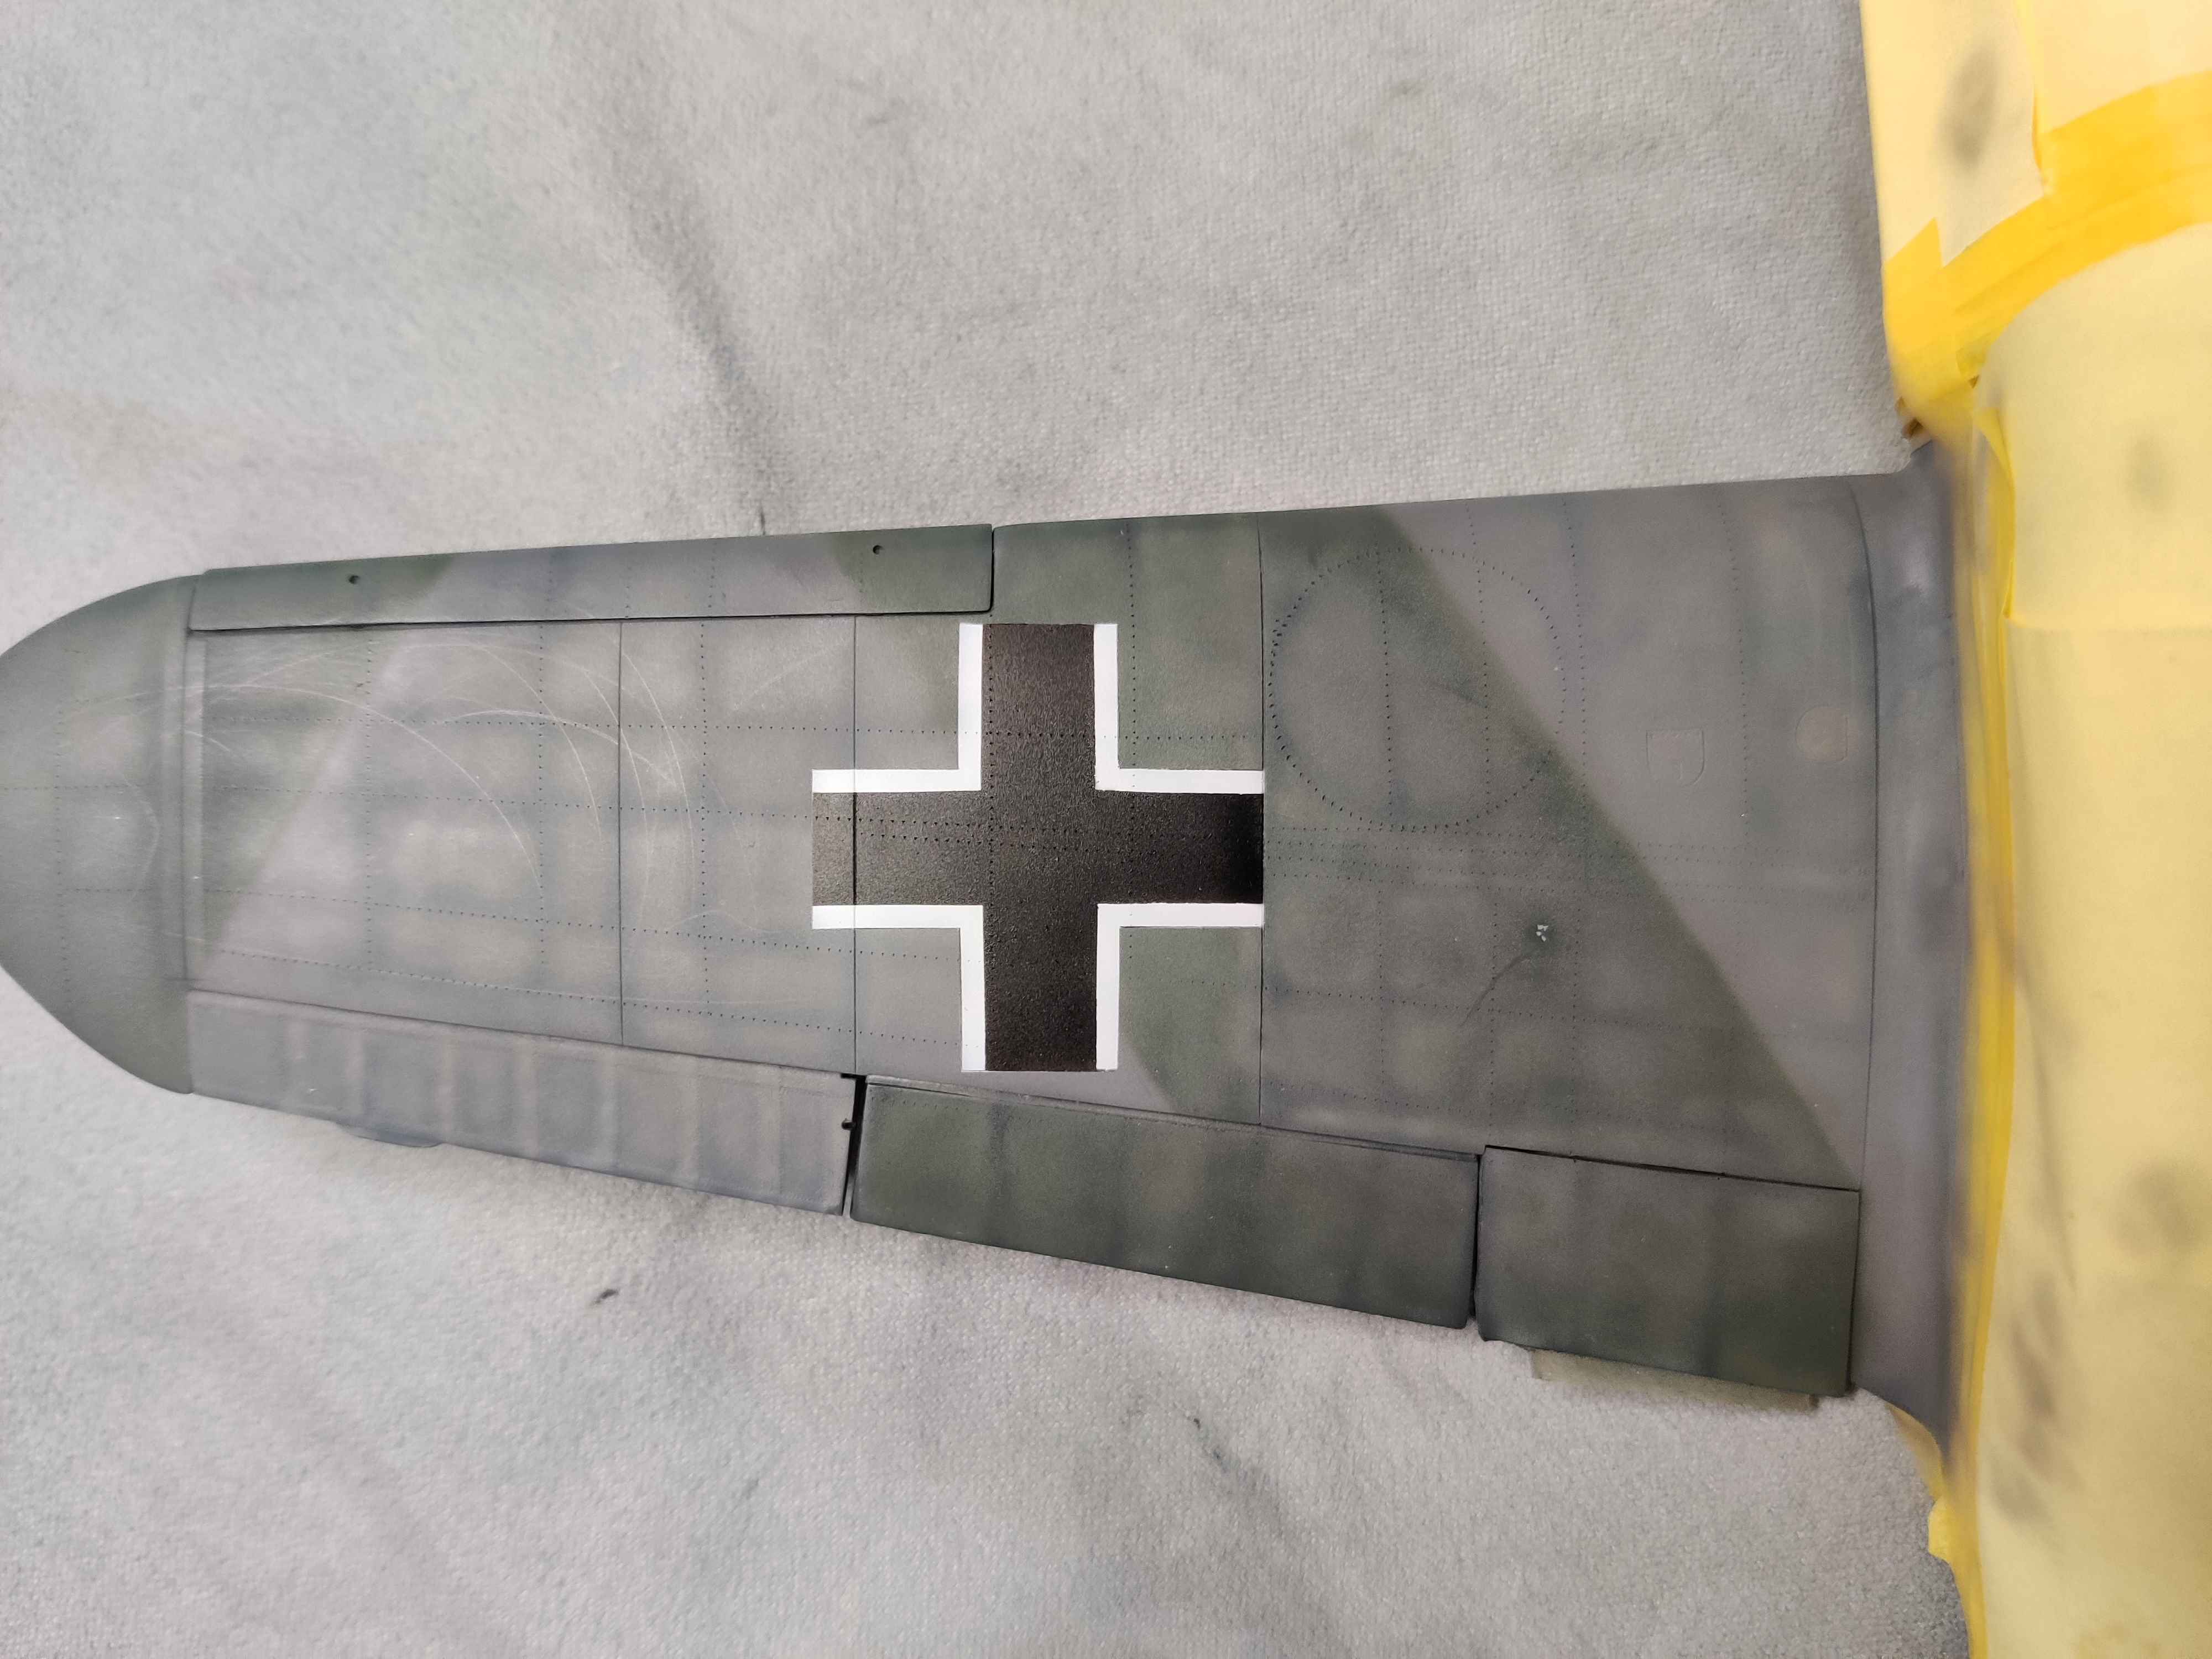 (GB JICEHEM) [REVELL] Messerschmitt Bf 109G-2 de Johannes "Macky" Steinhoff 1/32 - Page 3 Flpi